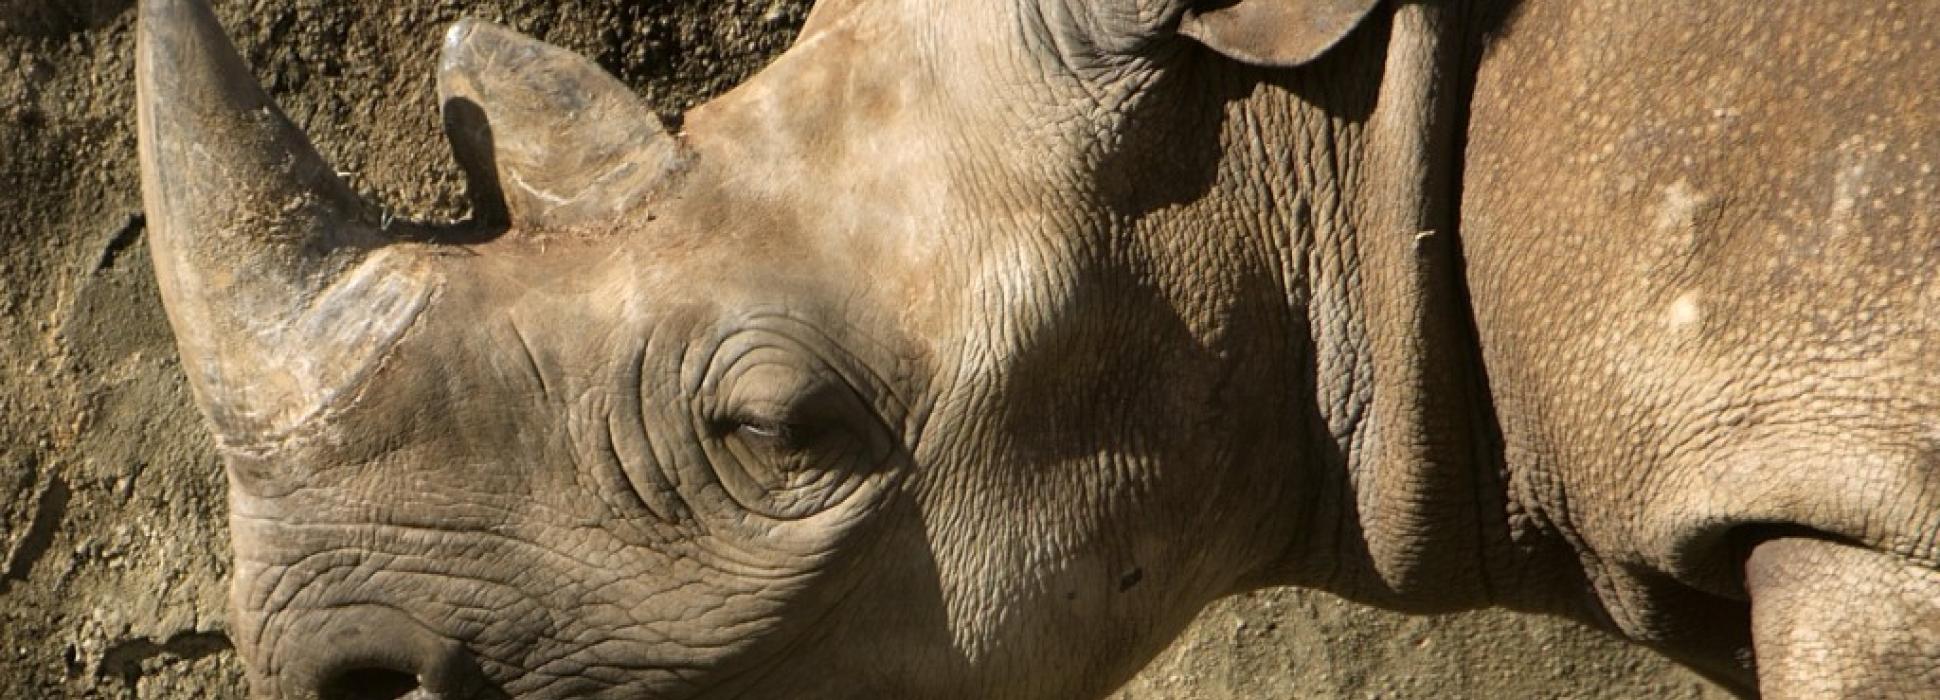 L’ONG Rewild, repreneur du zoo de Pont-Scorff, publie l’autopsie du rhinocéros noir Jacob décédé le 31 décembre 2019